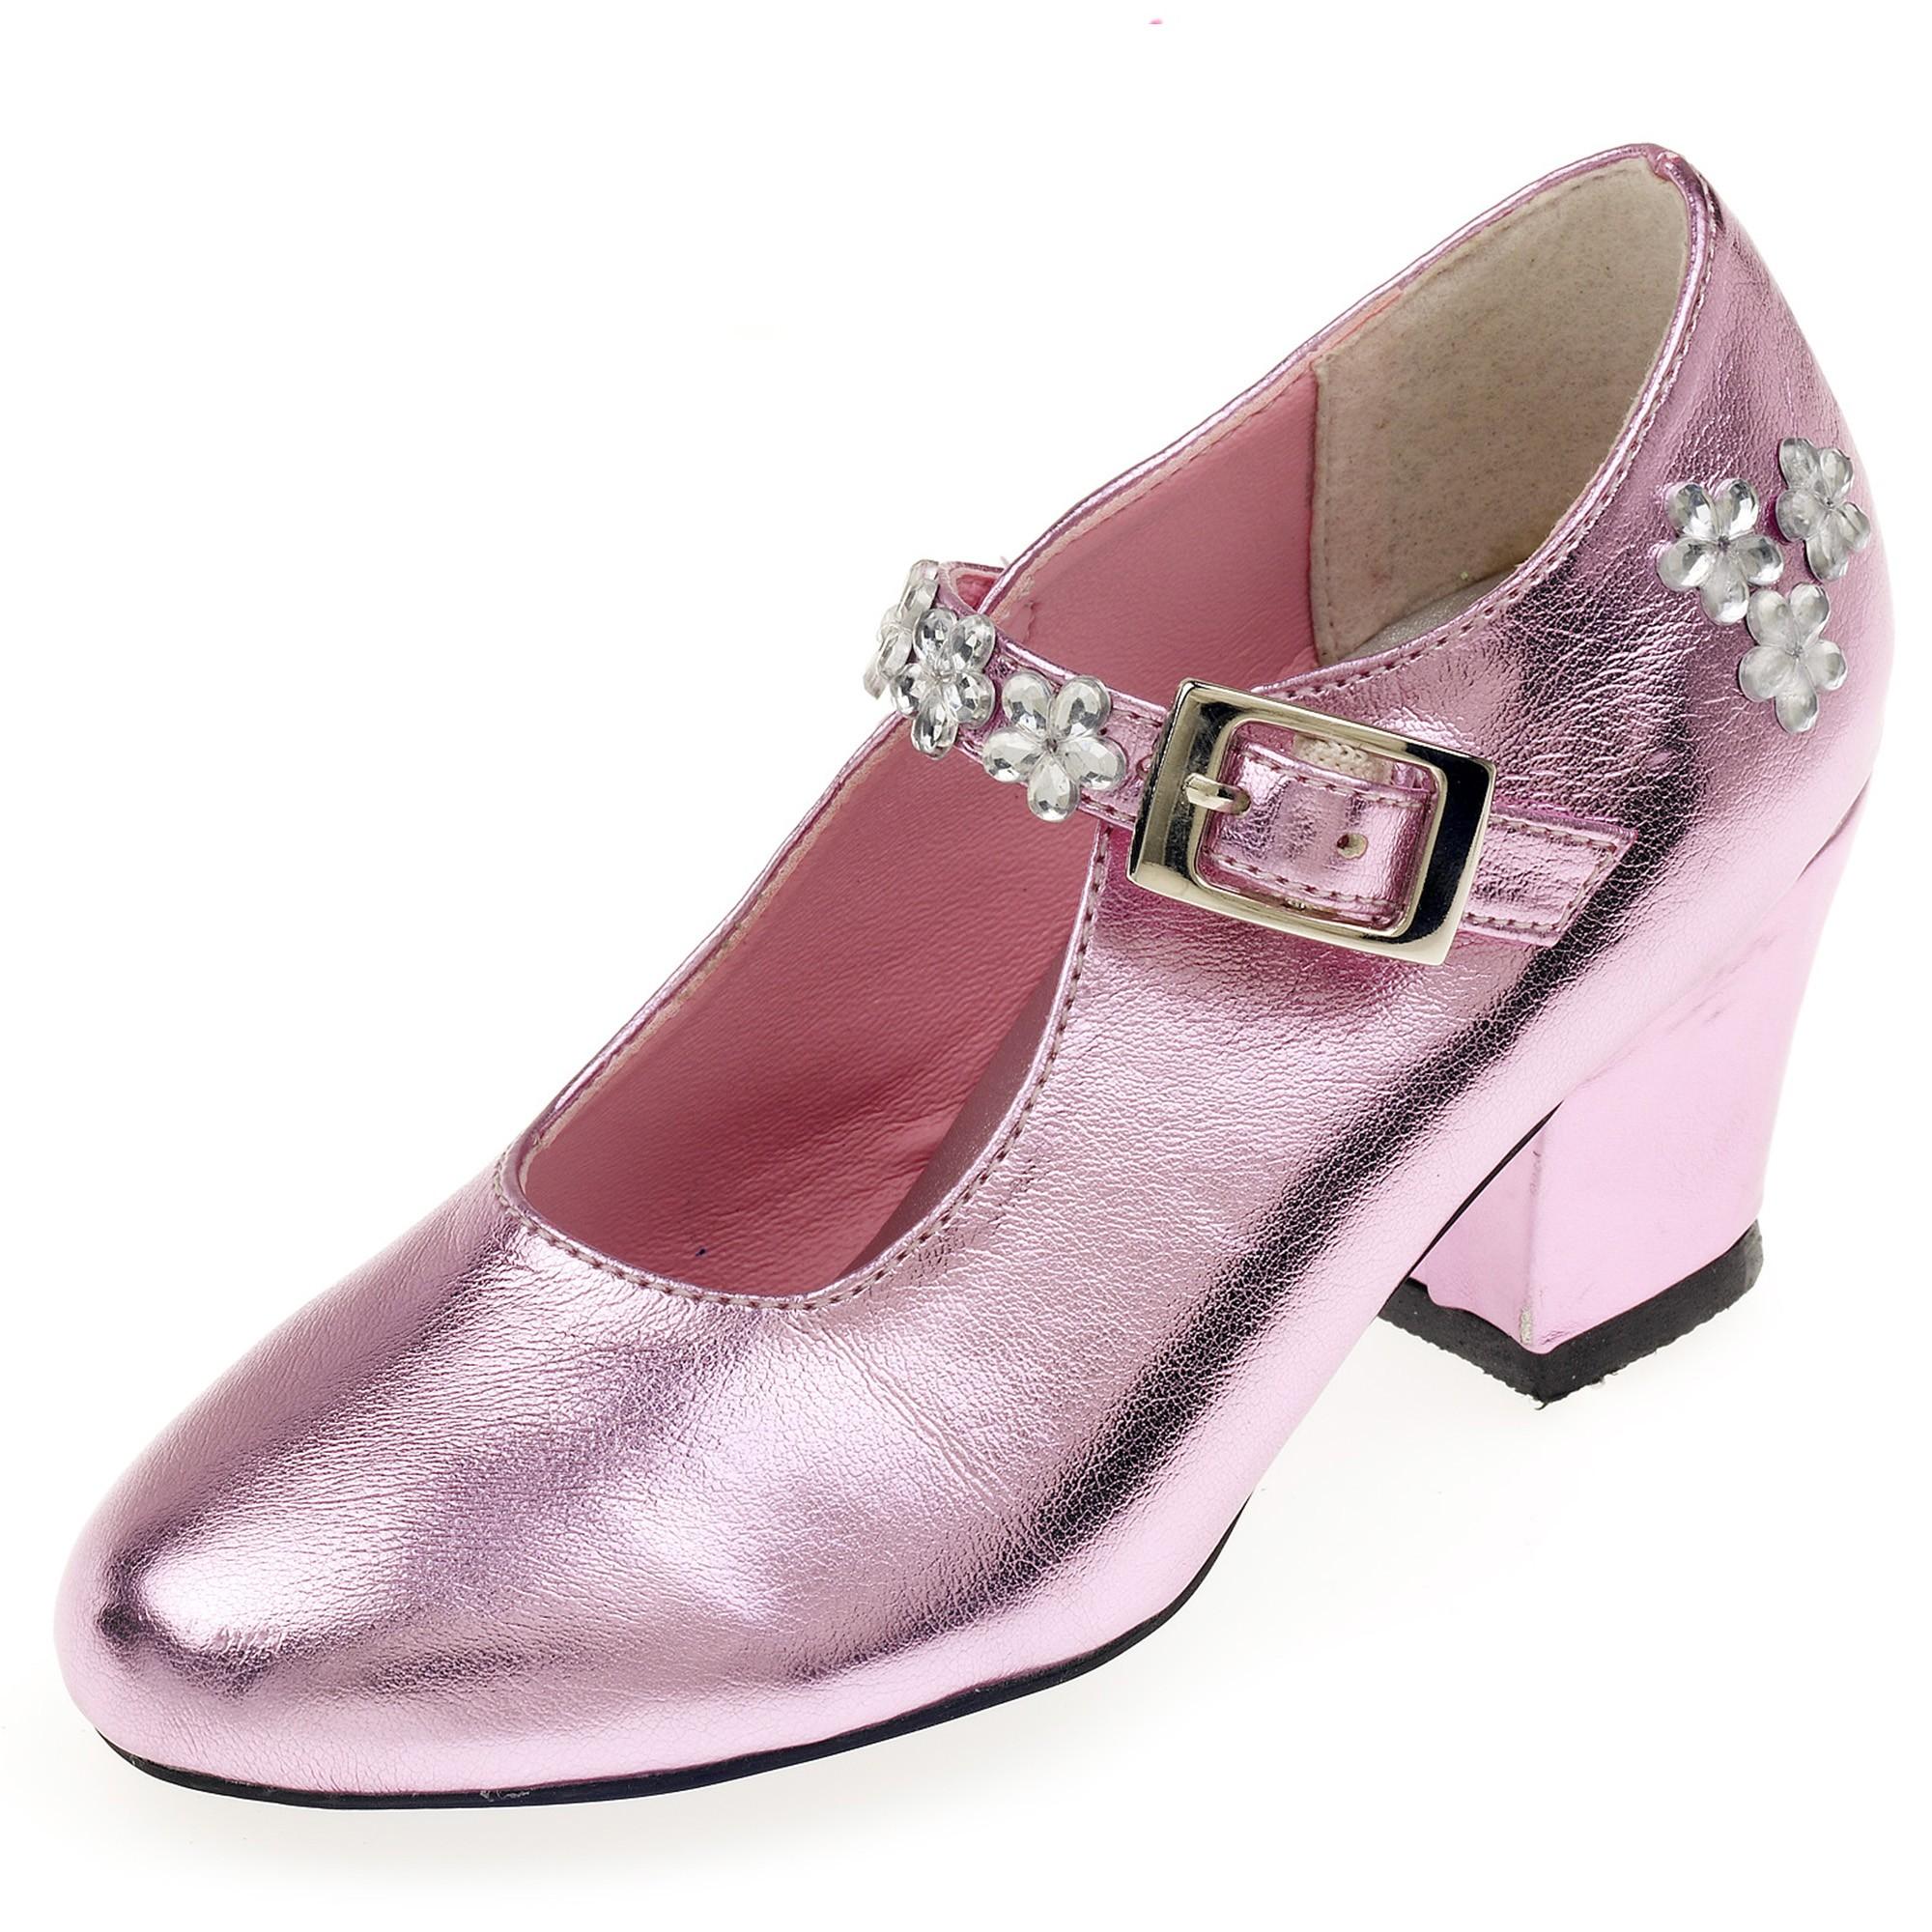 Souza - Schoentjes hoge hak Madeleine, roze metallic, mt 30 (1 paar)